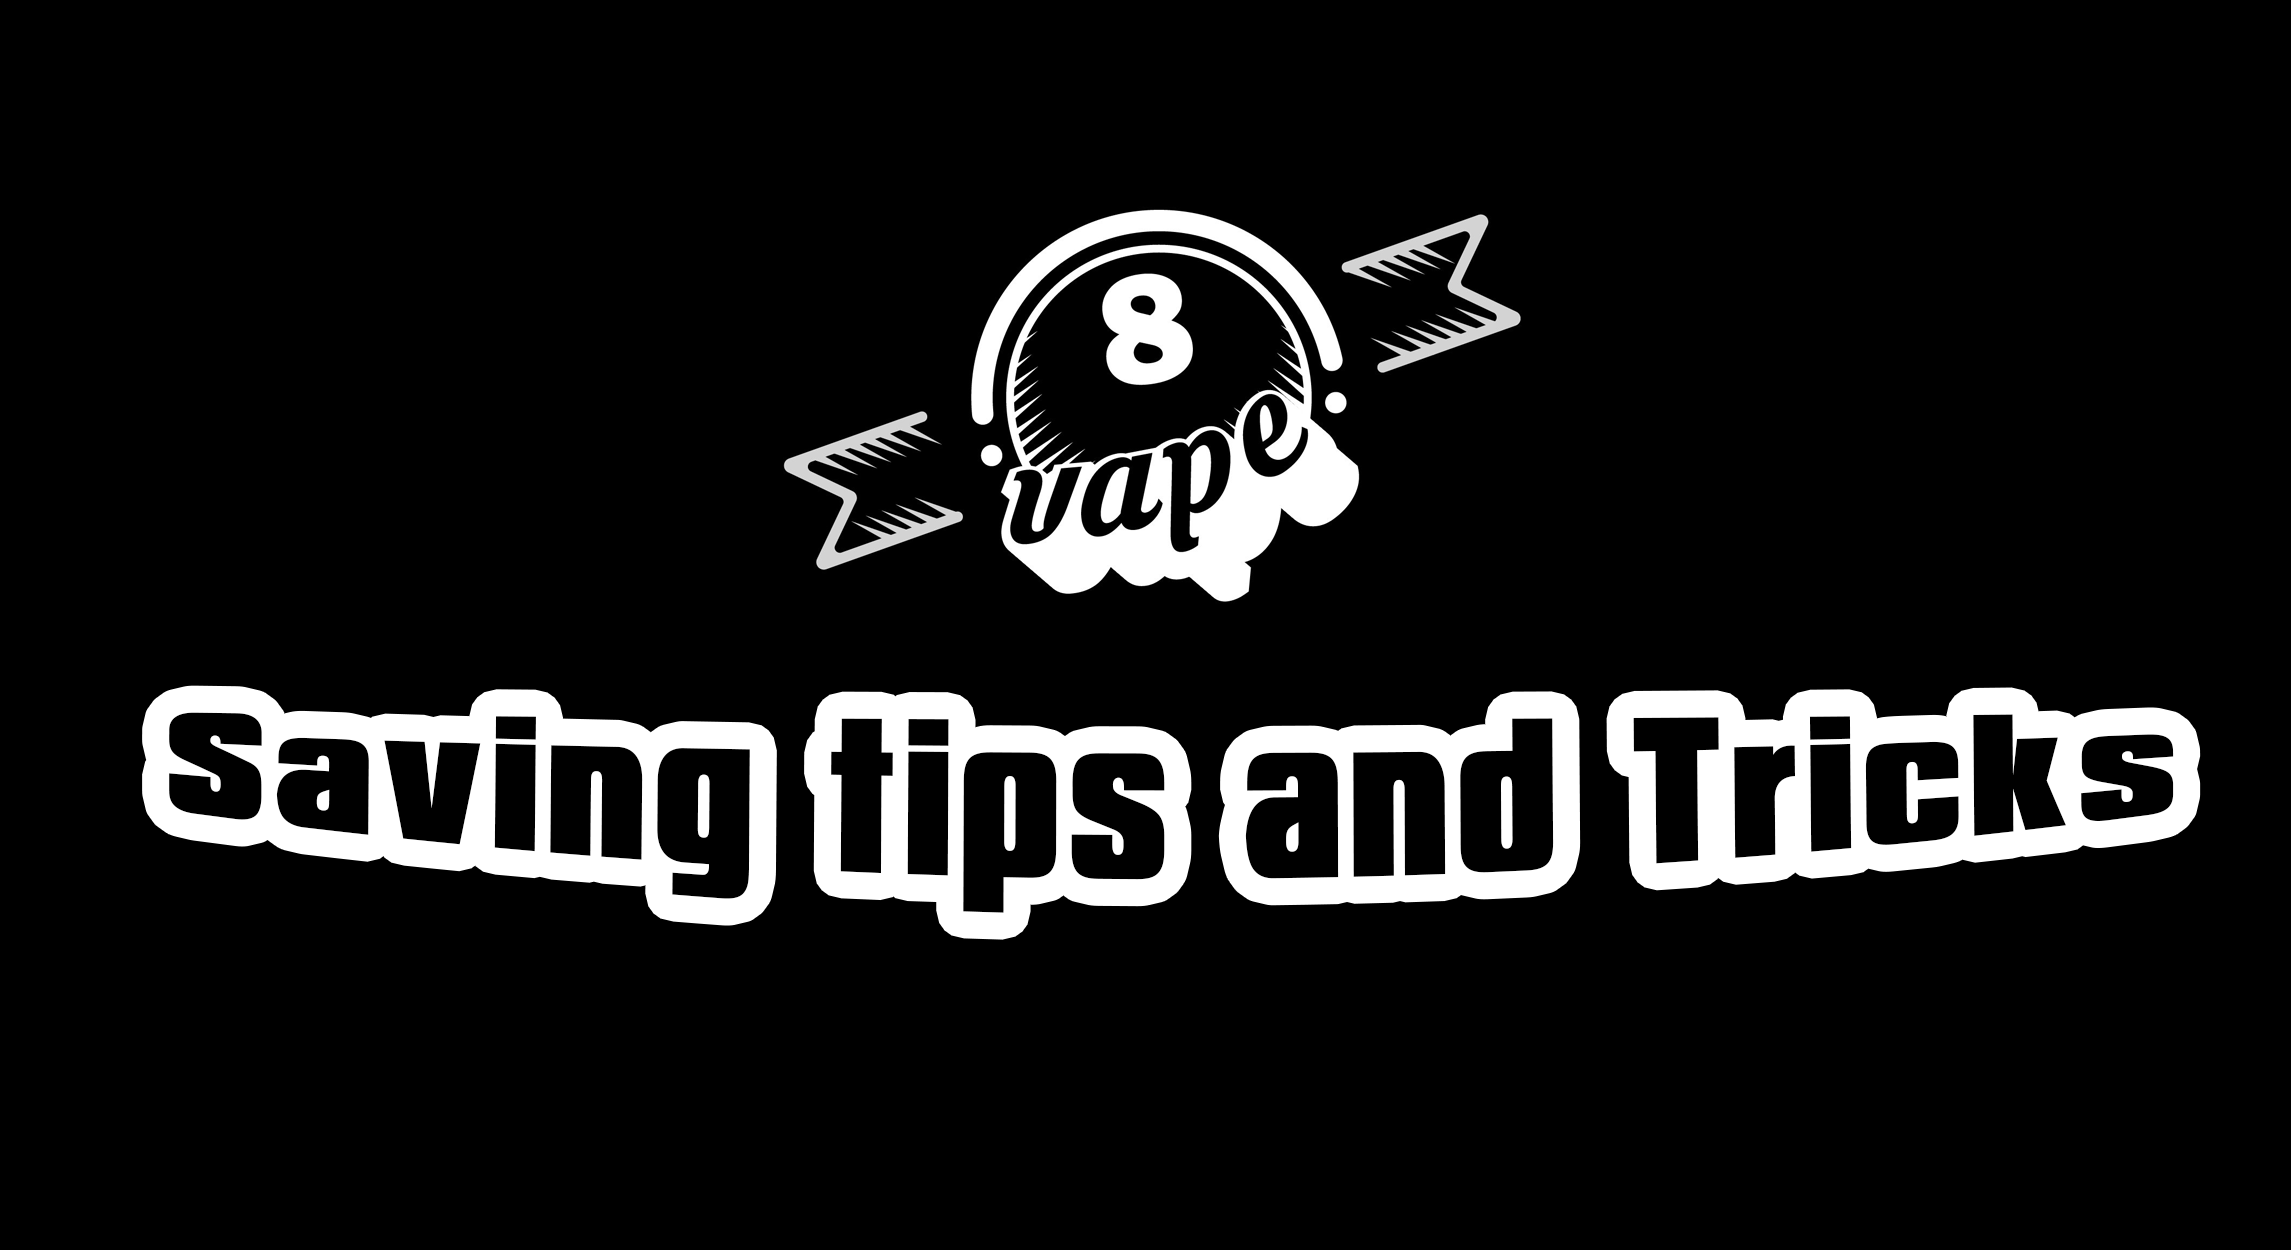 Saving tips and Tricks